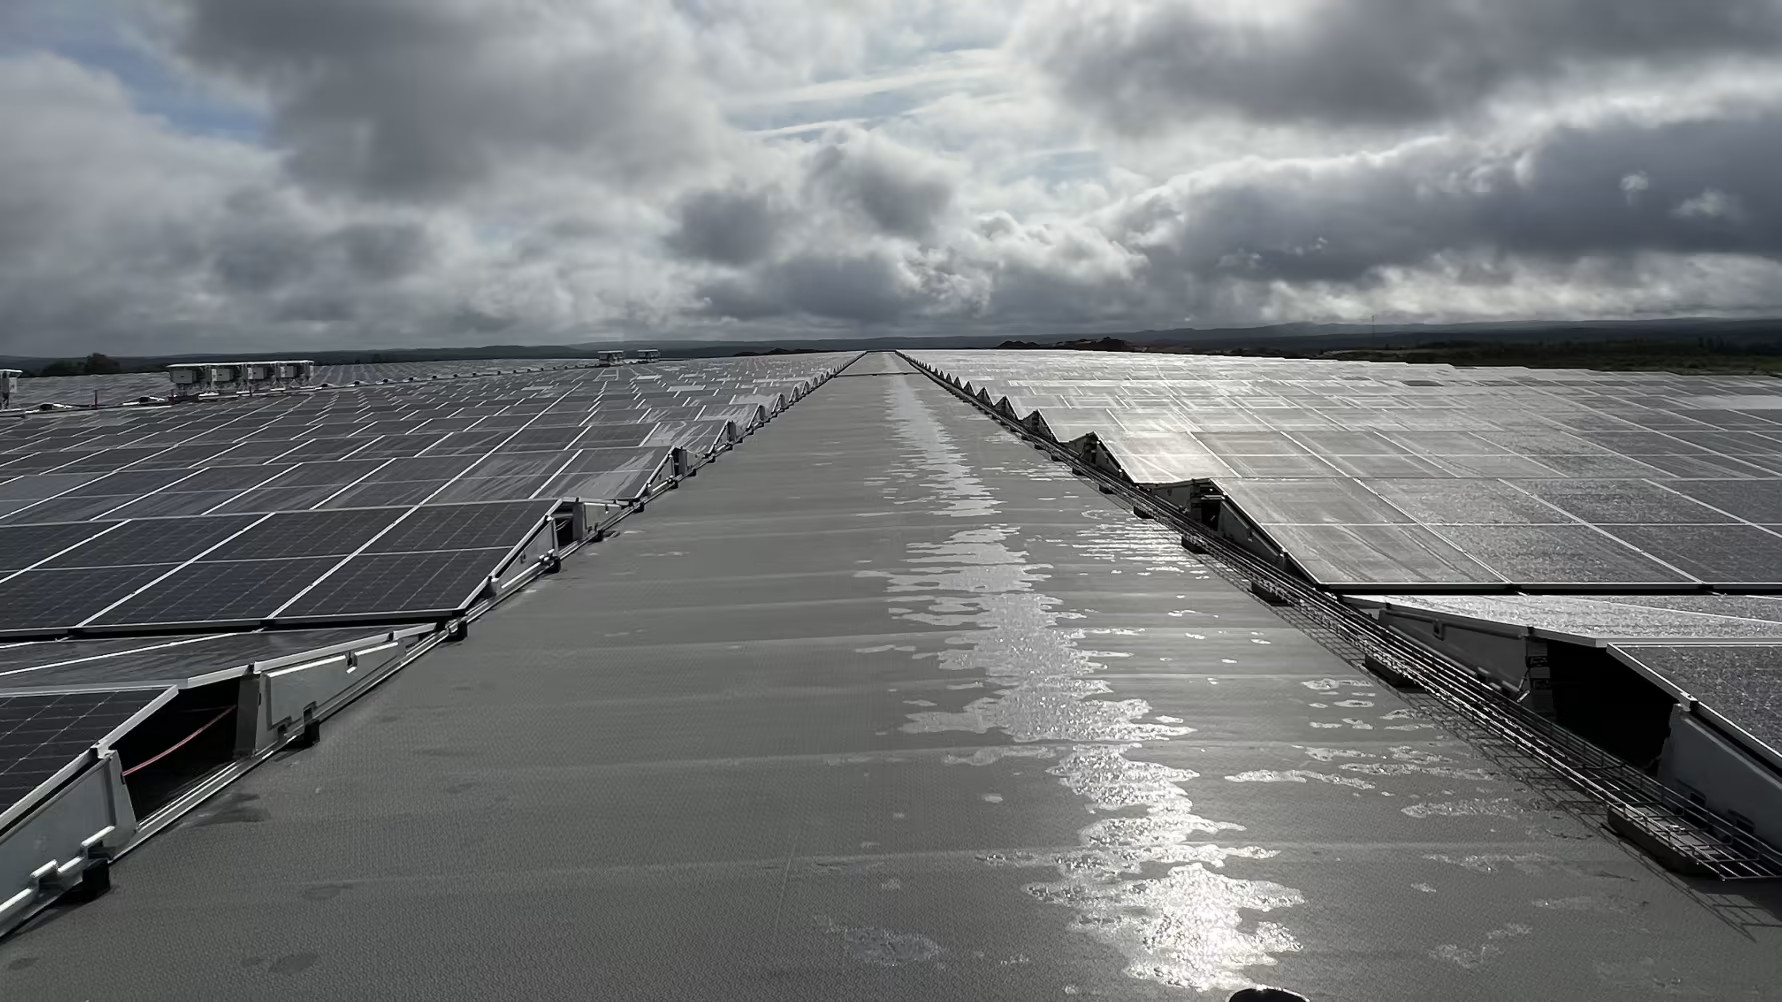    Svenska Retursystems solcellstak i Vaggeryd är ett av Sveriges största.